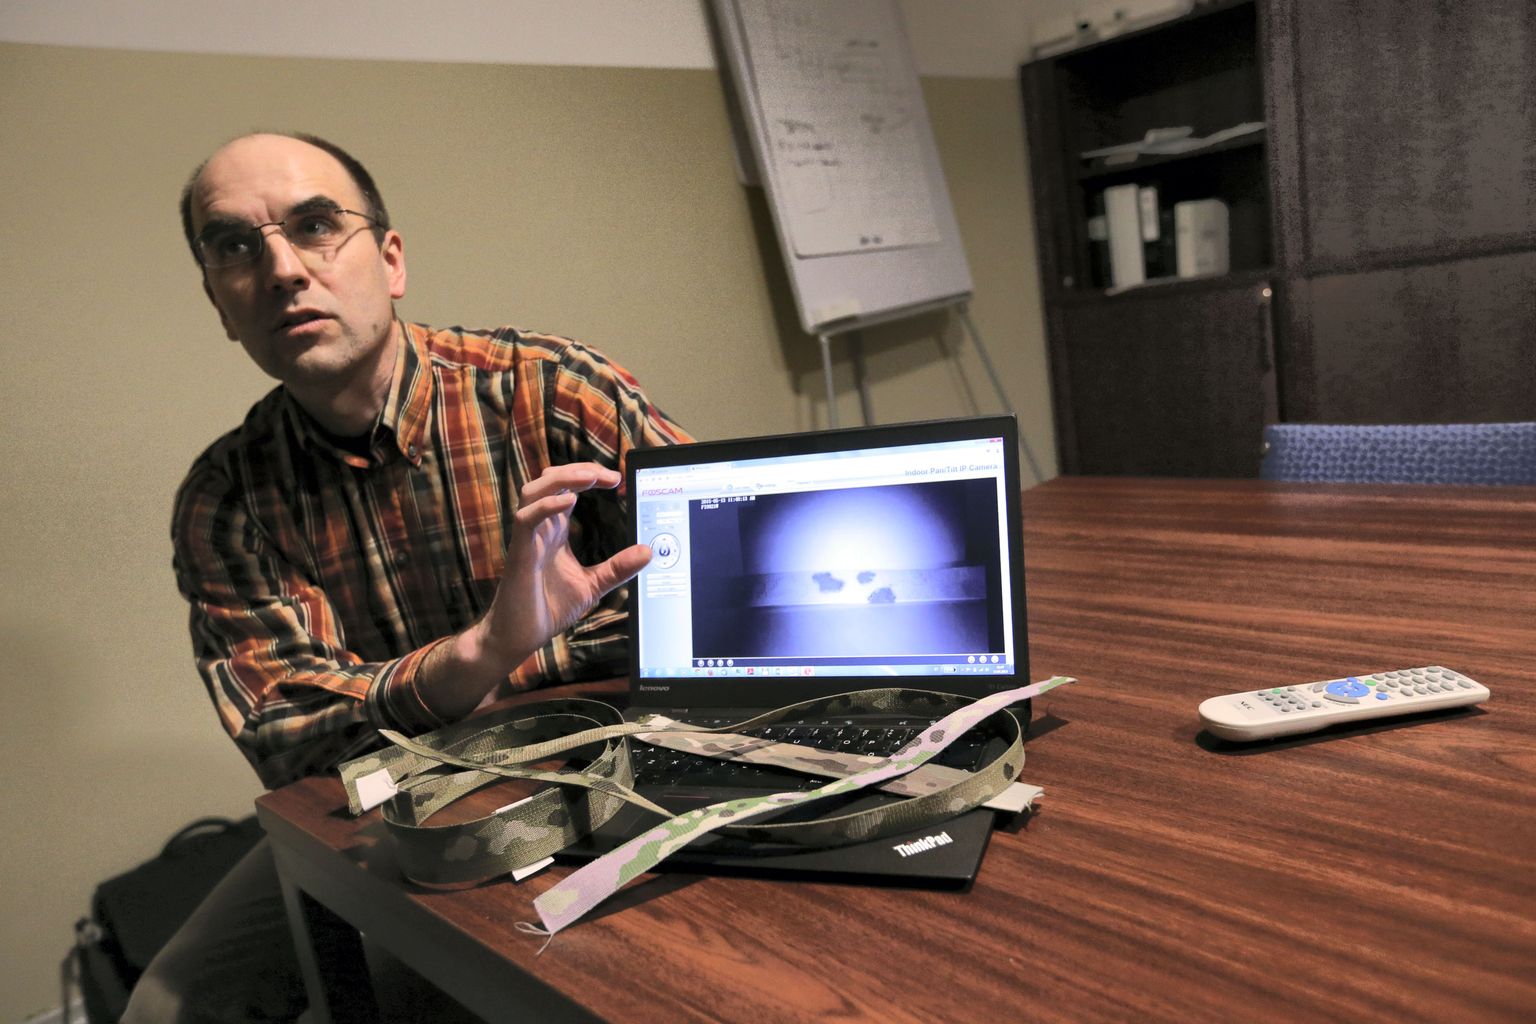 OÜ Haine Paelavabrik projektijuht, Tartu ülikooli nanostruktuuride labori vanemteadur Ilmar Kink näitas arvutis üht ülikooli teadlaste välja töötatud infrapuna-kamuflaažpaela, mis säilitab öönägemisseadme vaateväljas oma maskeeringu ja sulab keskkonnaga kokku. Tavaline kamuflaažpael paistab öönägemisseadmest nagu helkur.